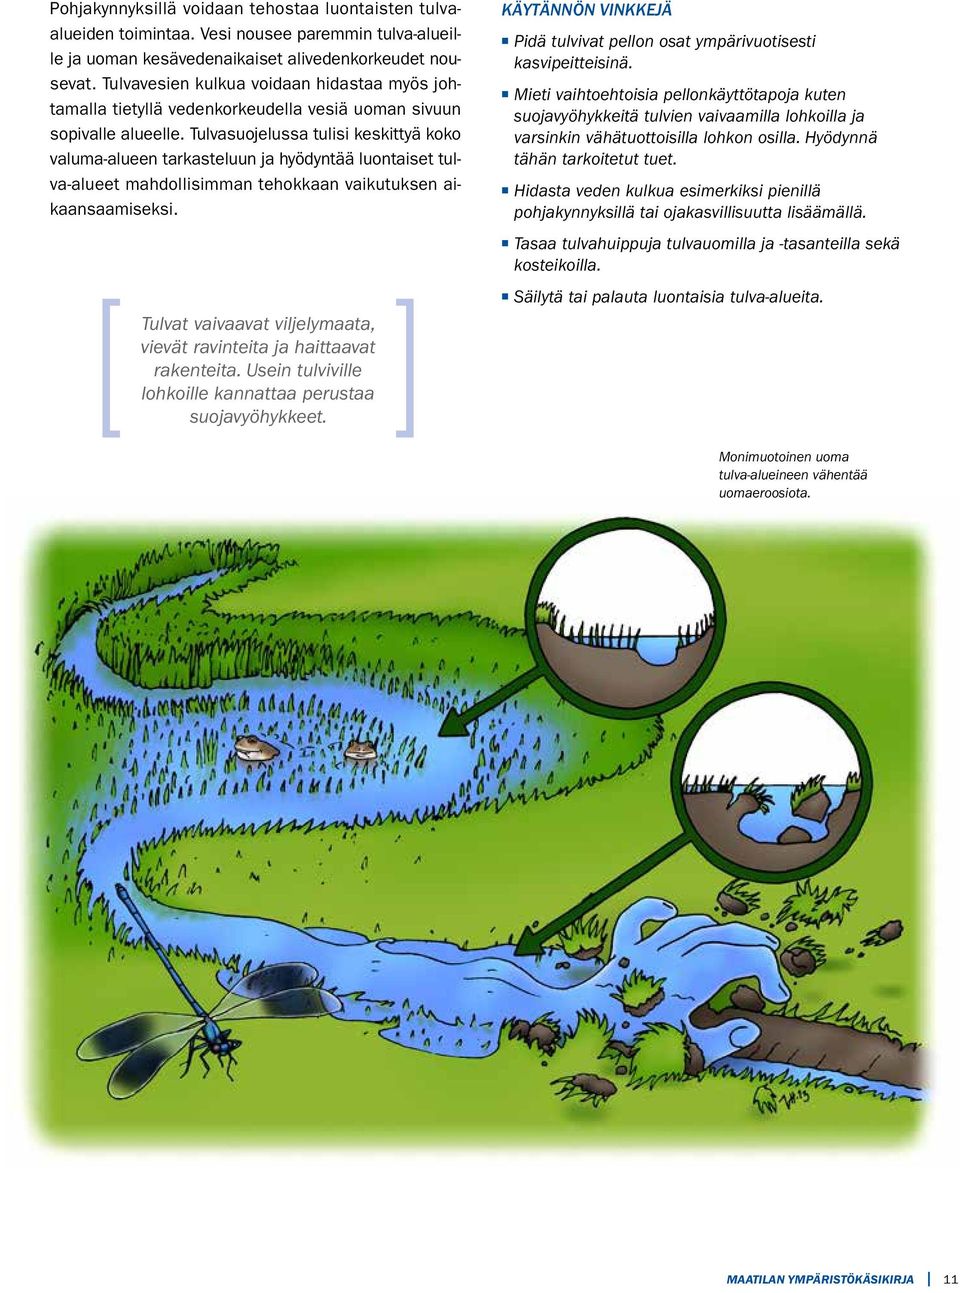 Tulvasuojelussa tulisi keskittyä koko valuma-alueen tarkasteluun ja hyödyntää luontaiset tulva-alueet mahdollisimman tehokkaan vaikutuksen aikaansaamiseksi.